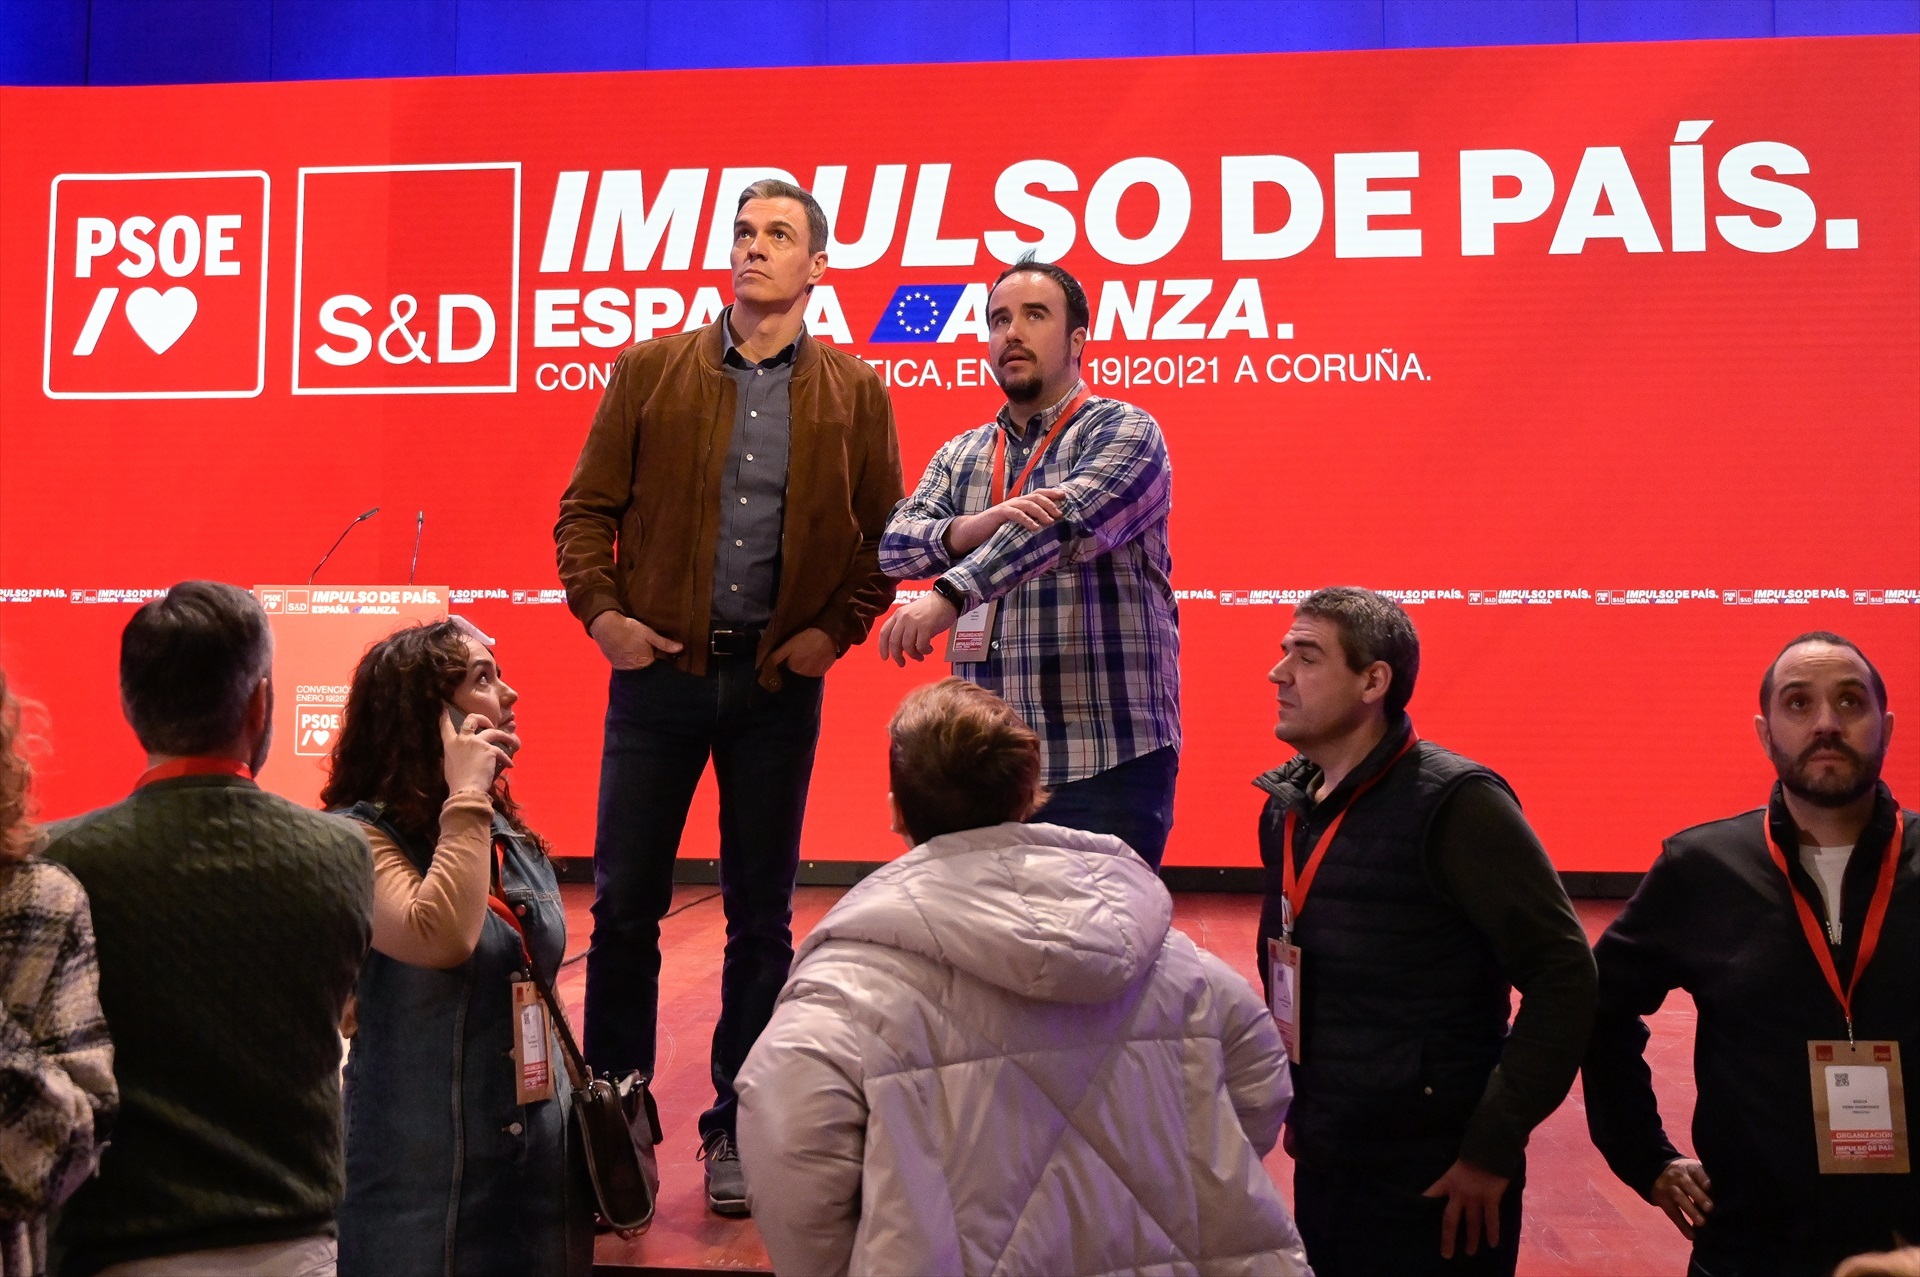 Interrupción abrupta del discurso de Sánchez por una emergencia médica en la convención política del PSOE